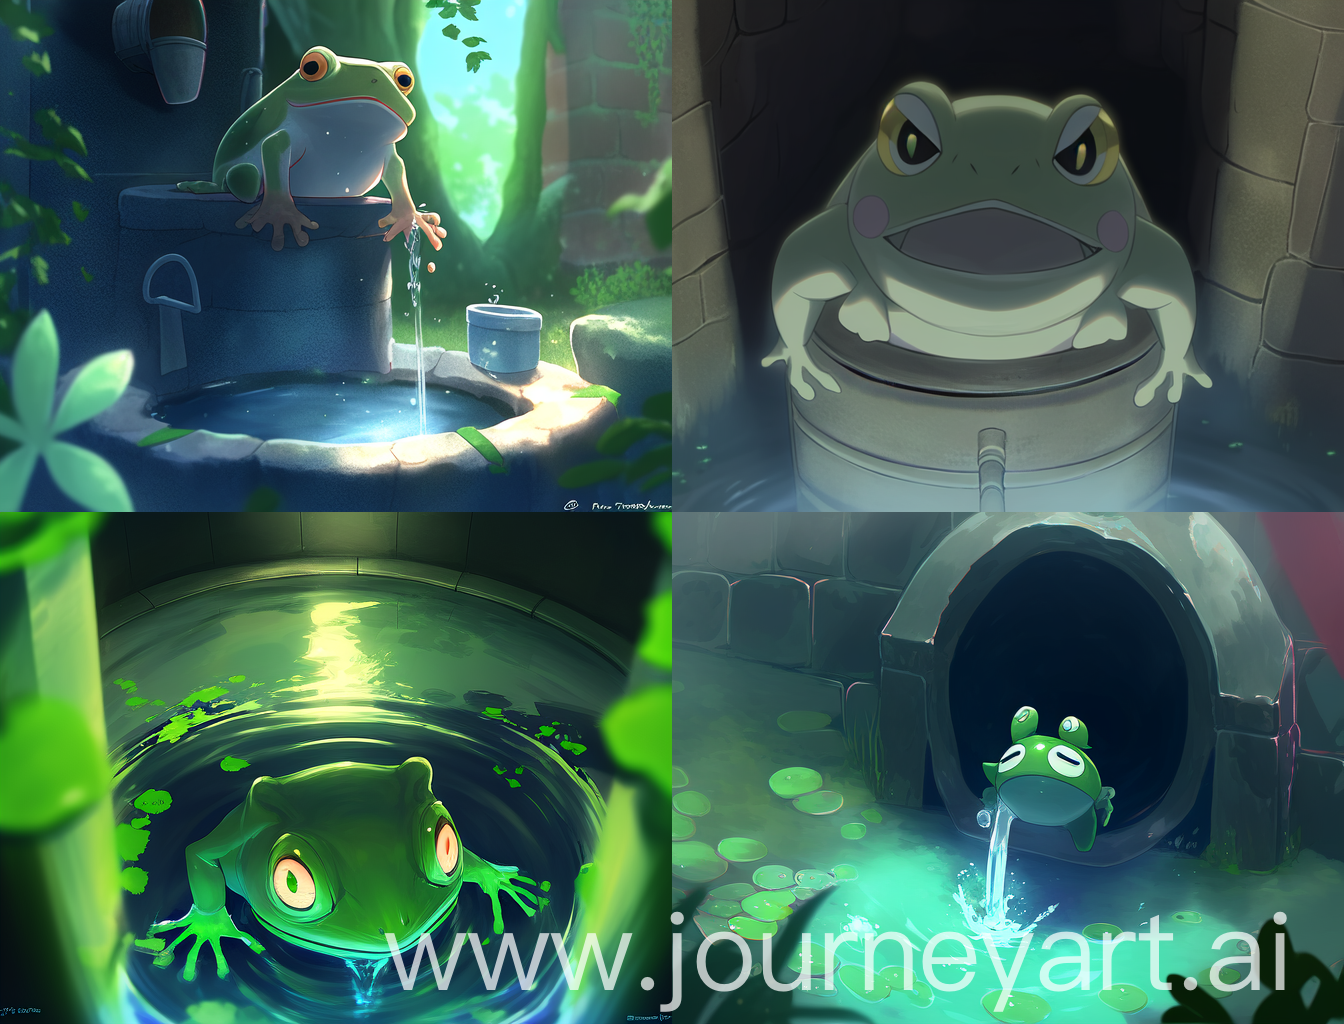 井底深处，一只青蛙蹲坐在井壁上，眼睛明亮，身体呈现出青绿色的光泽。